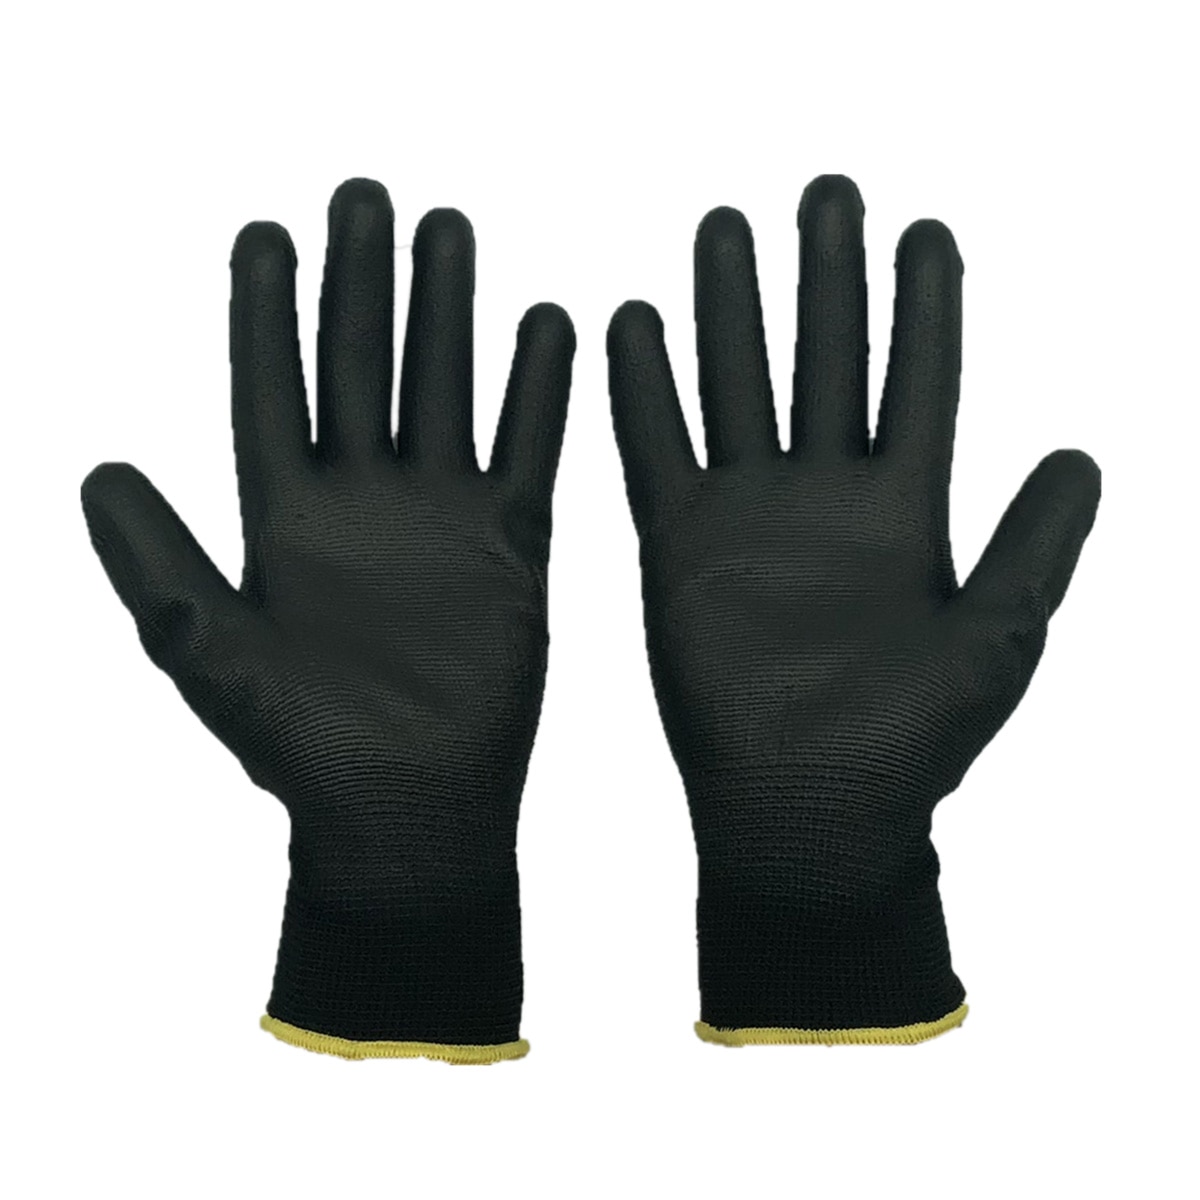 Nylon Handschoenen, Werkhandschoenen Met Pu Leather Coated Grip Op Palm En Vingers Voor Elektronische Industrie, Workshop